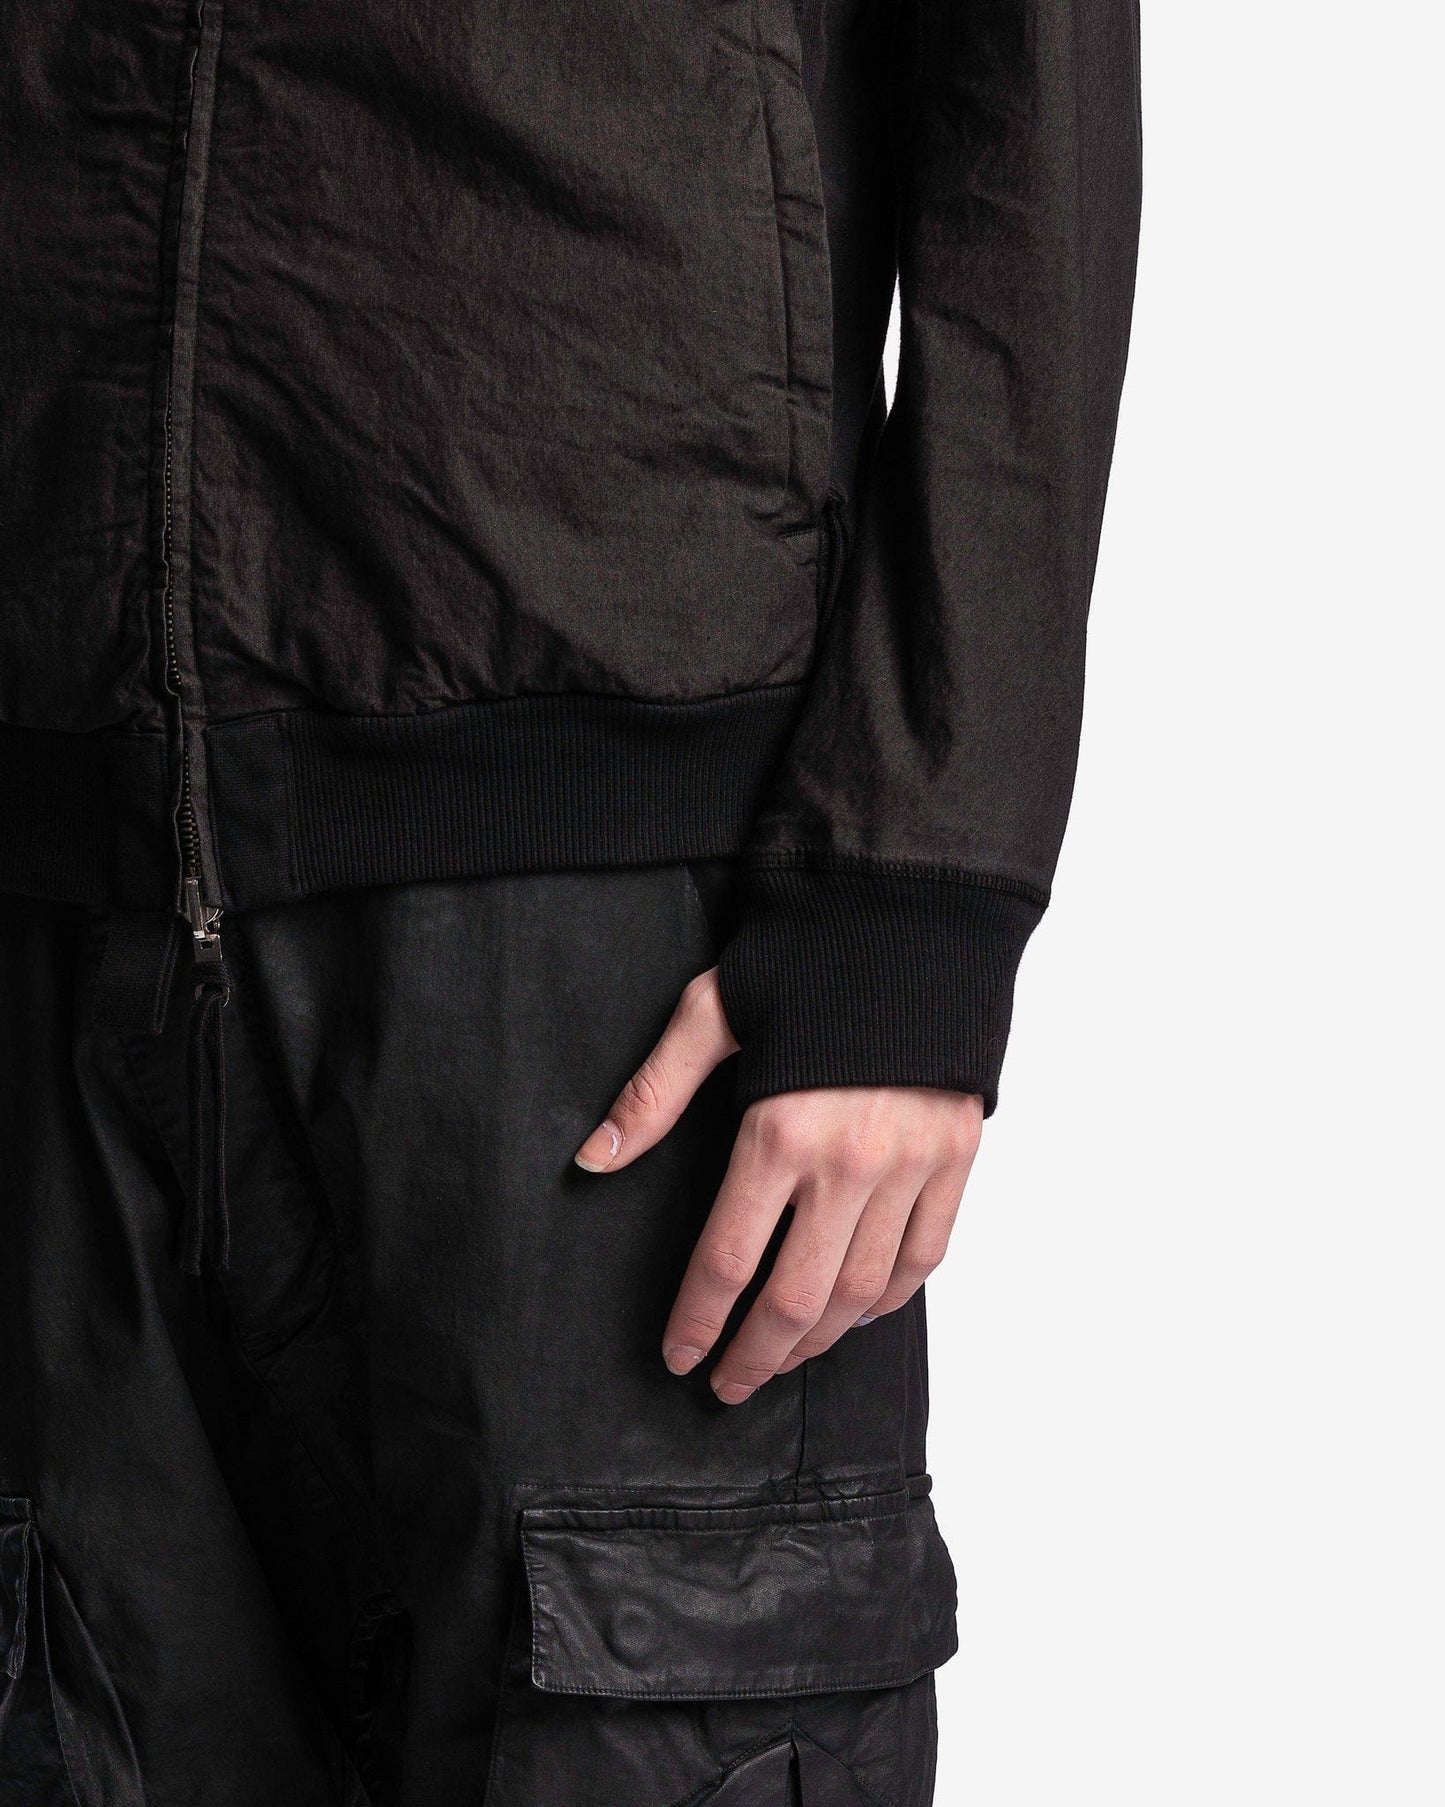 11 by Boris Bidjan Saberi Men's Jackets Hybrid Zipper 2.2 ST in Black Object Dye